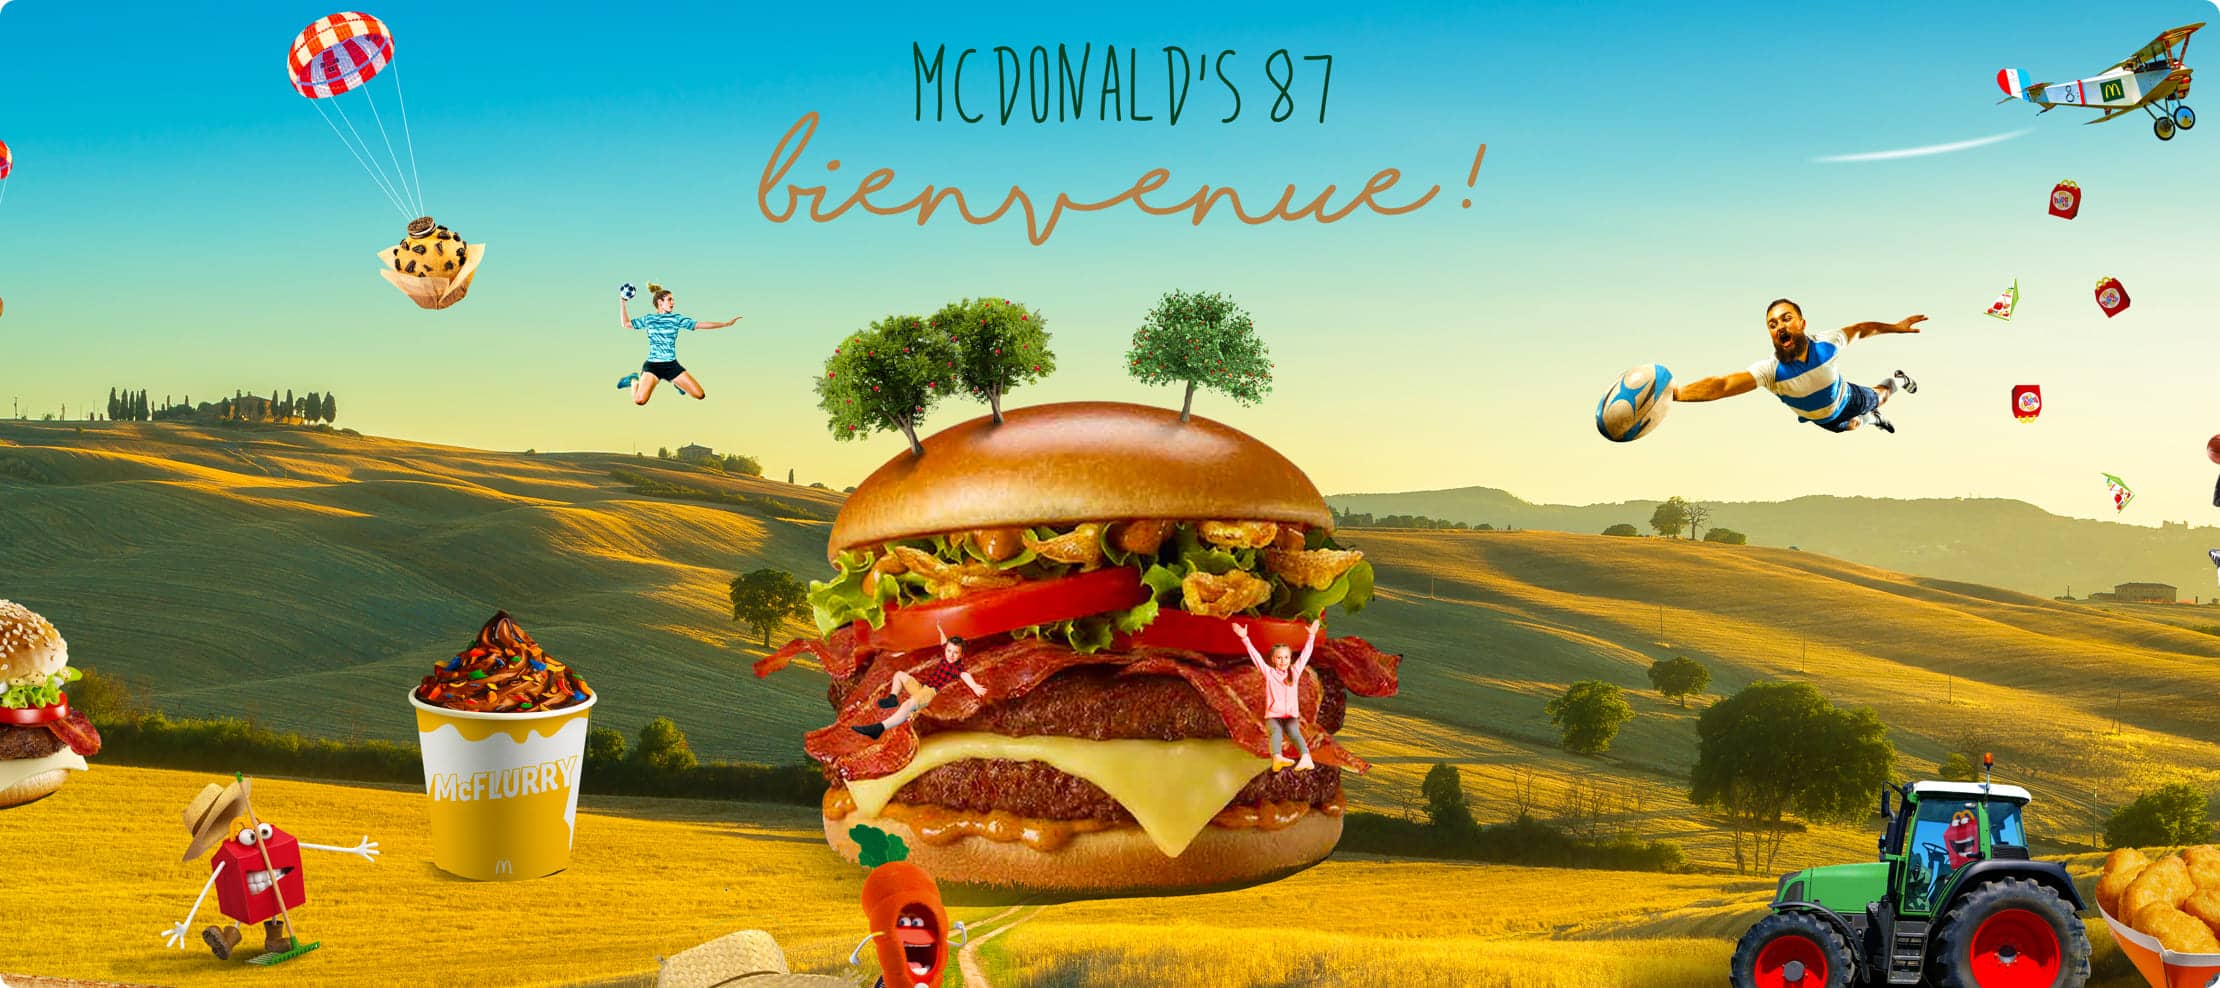 McDonalds 87 création agenda, agence de communication limoges